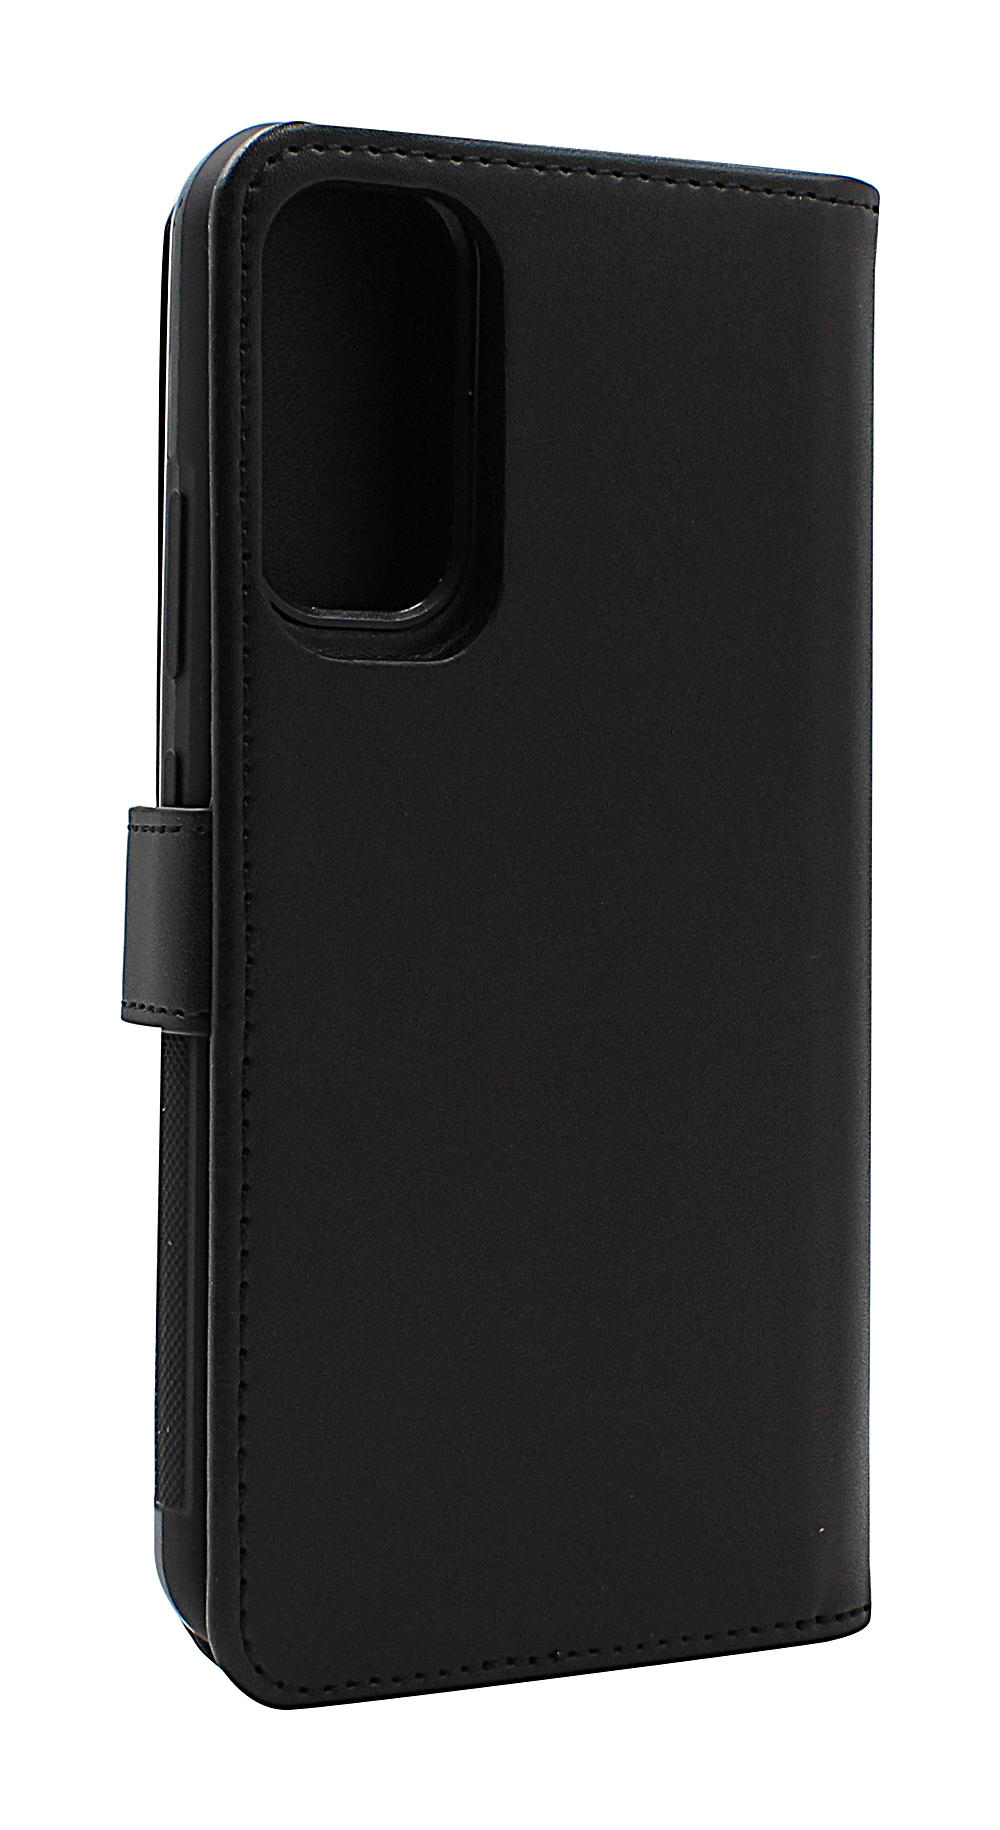 Skimblocker XL Magnet Wallet Samsung Galaxy A15 5G